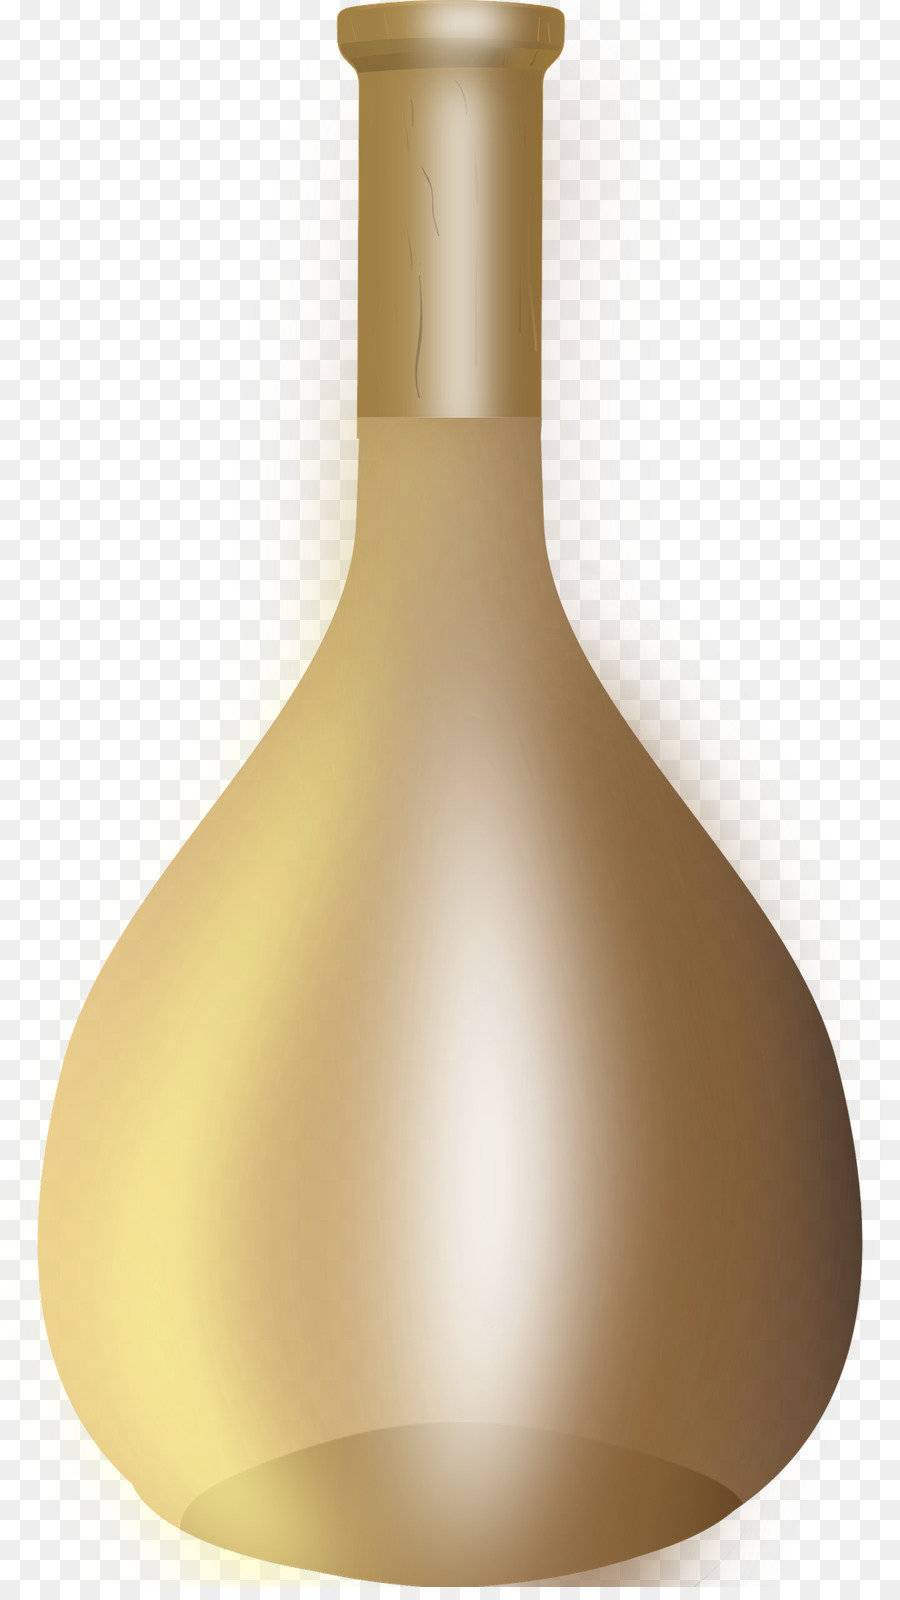 Flasche Download - goldene Flasche